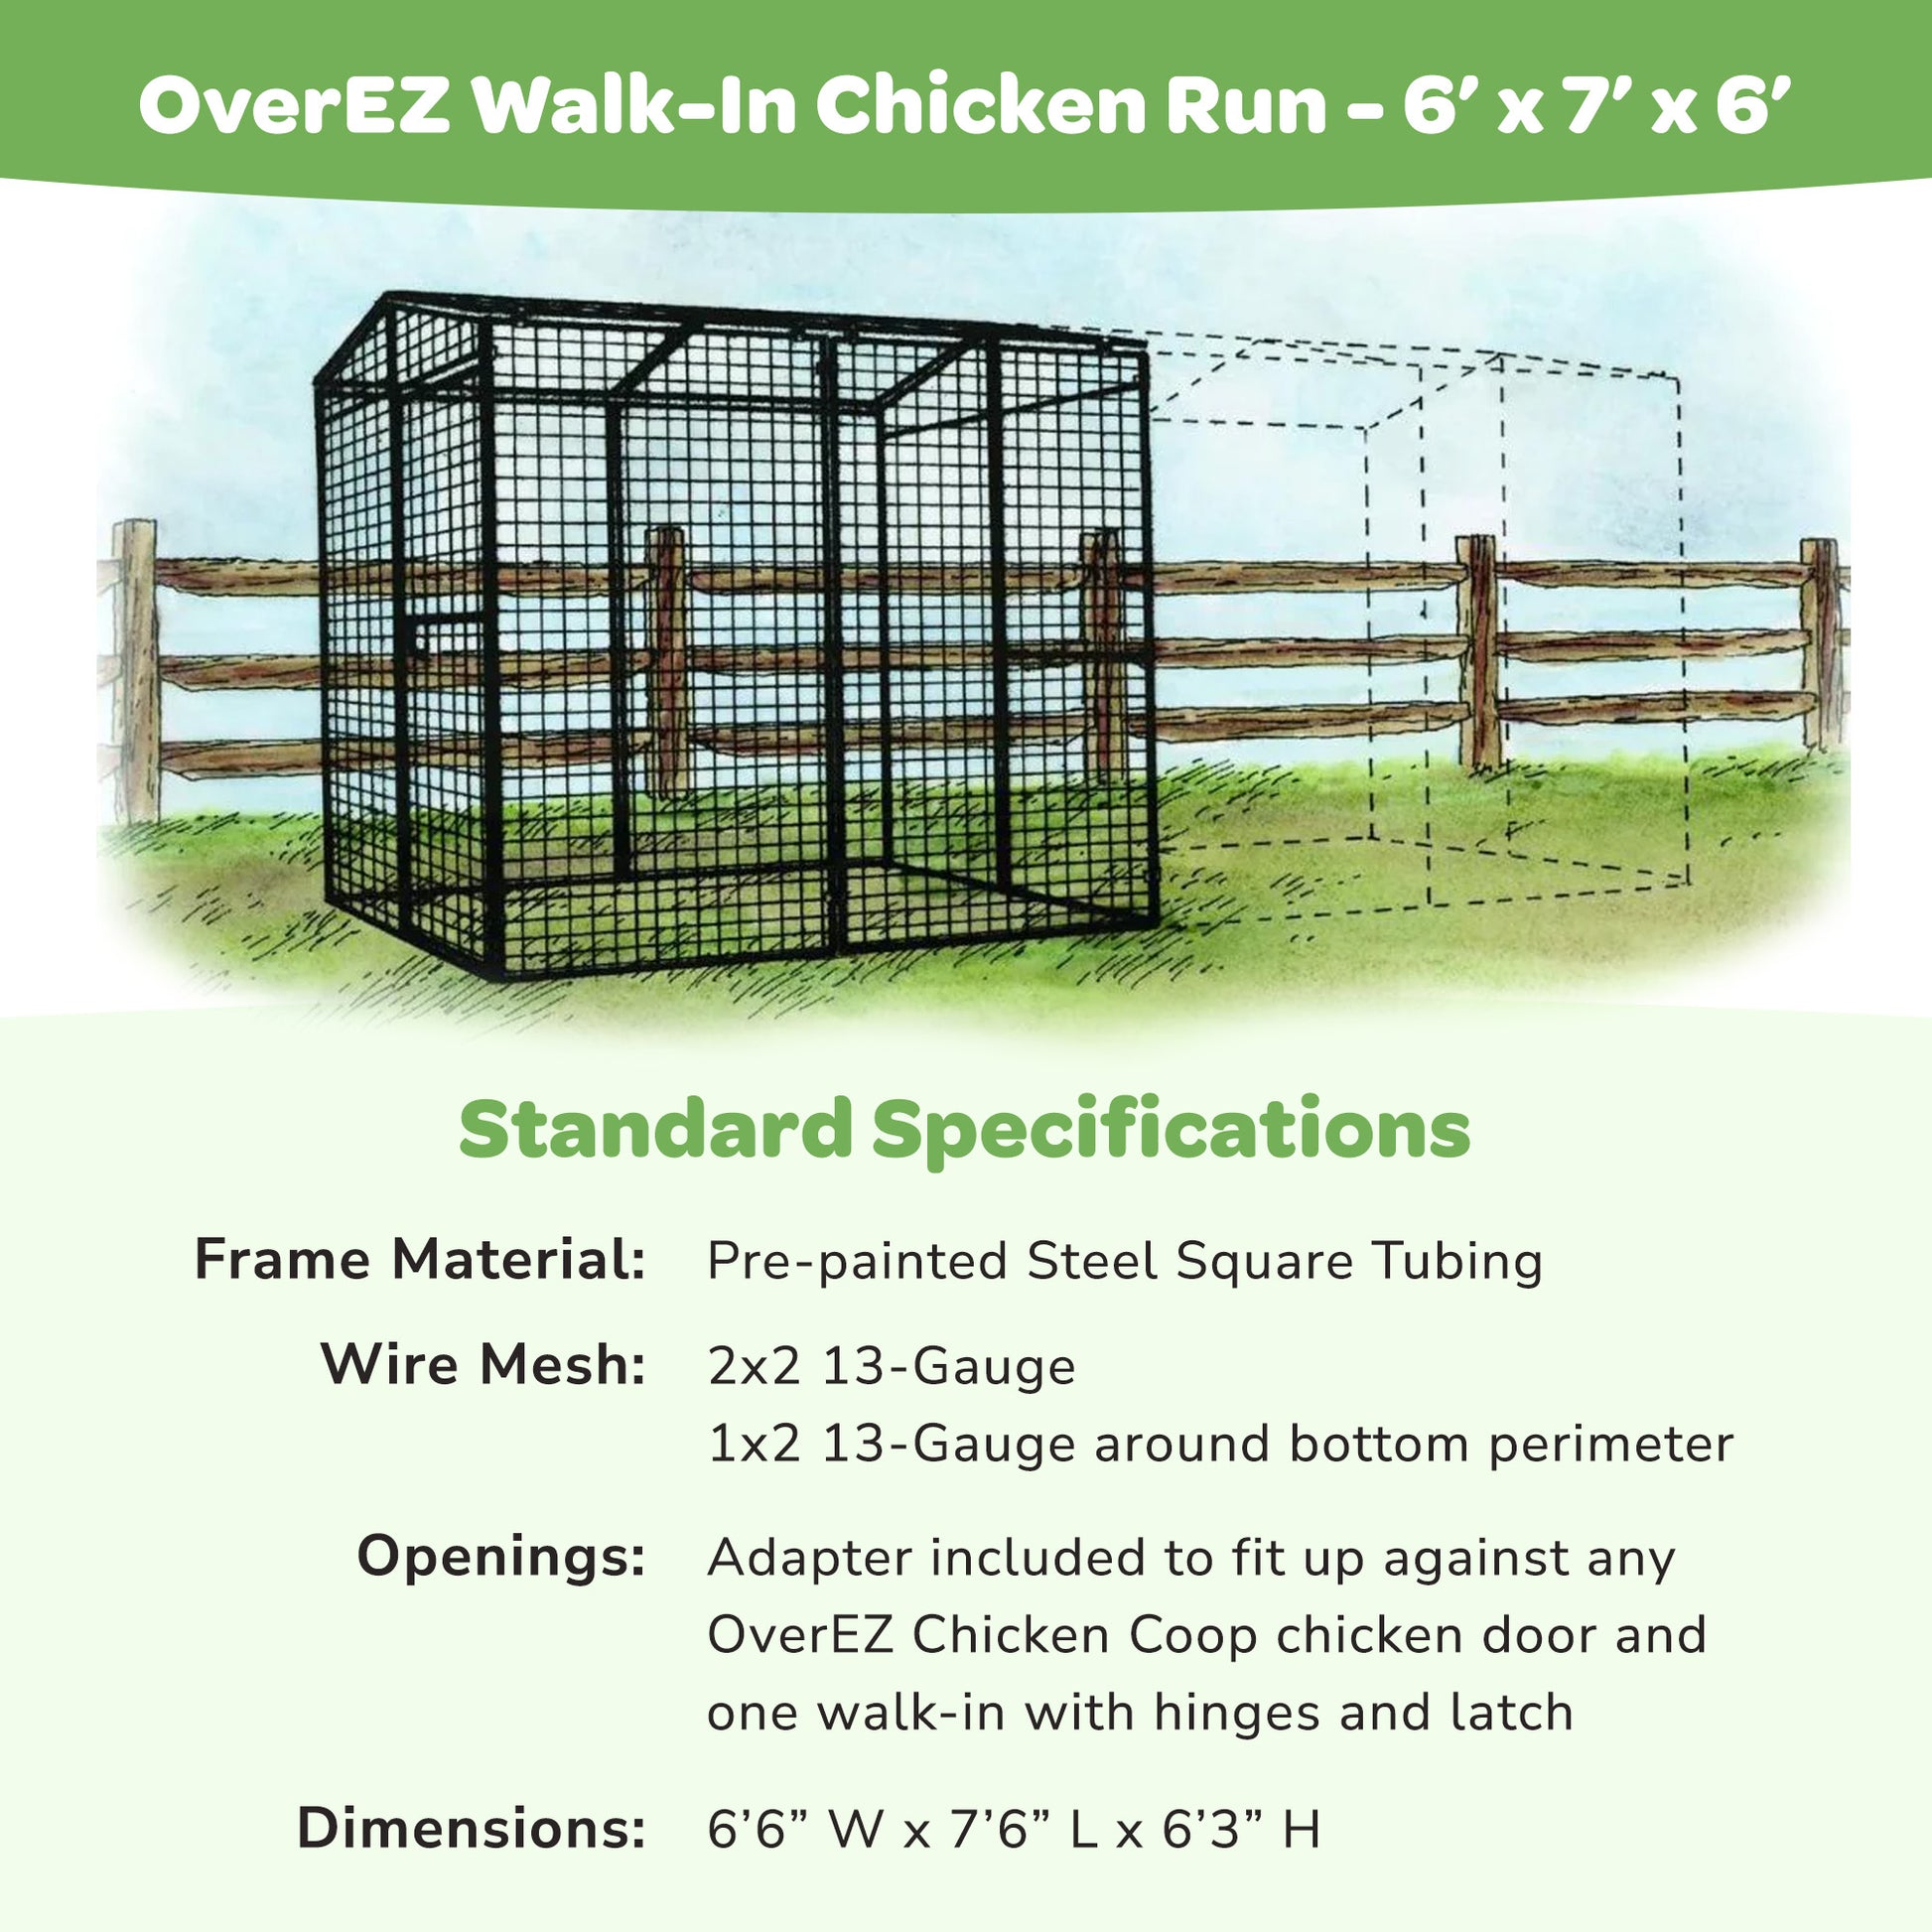 OverEZ Walk-In Chicken Run information